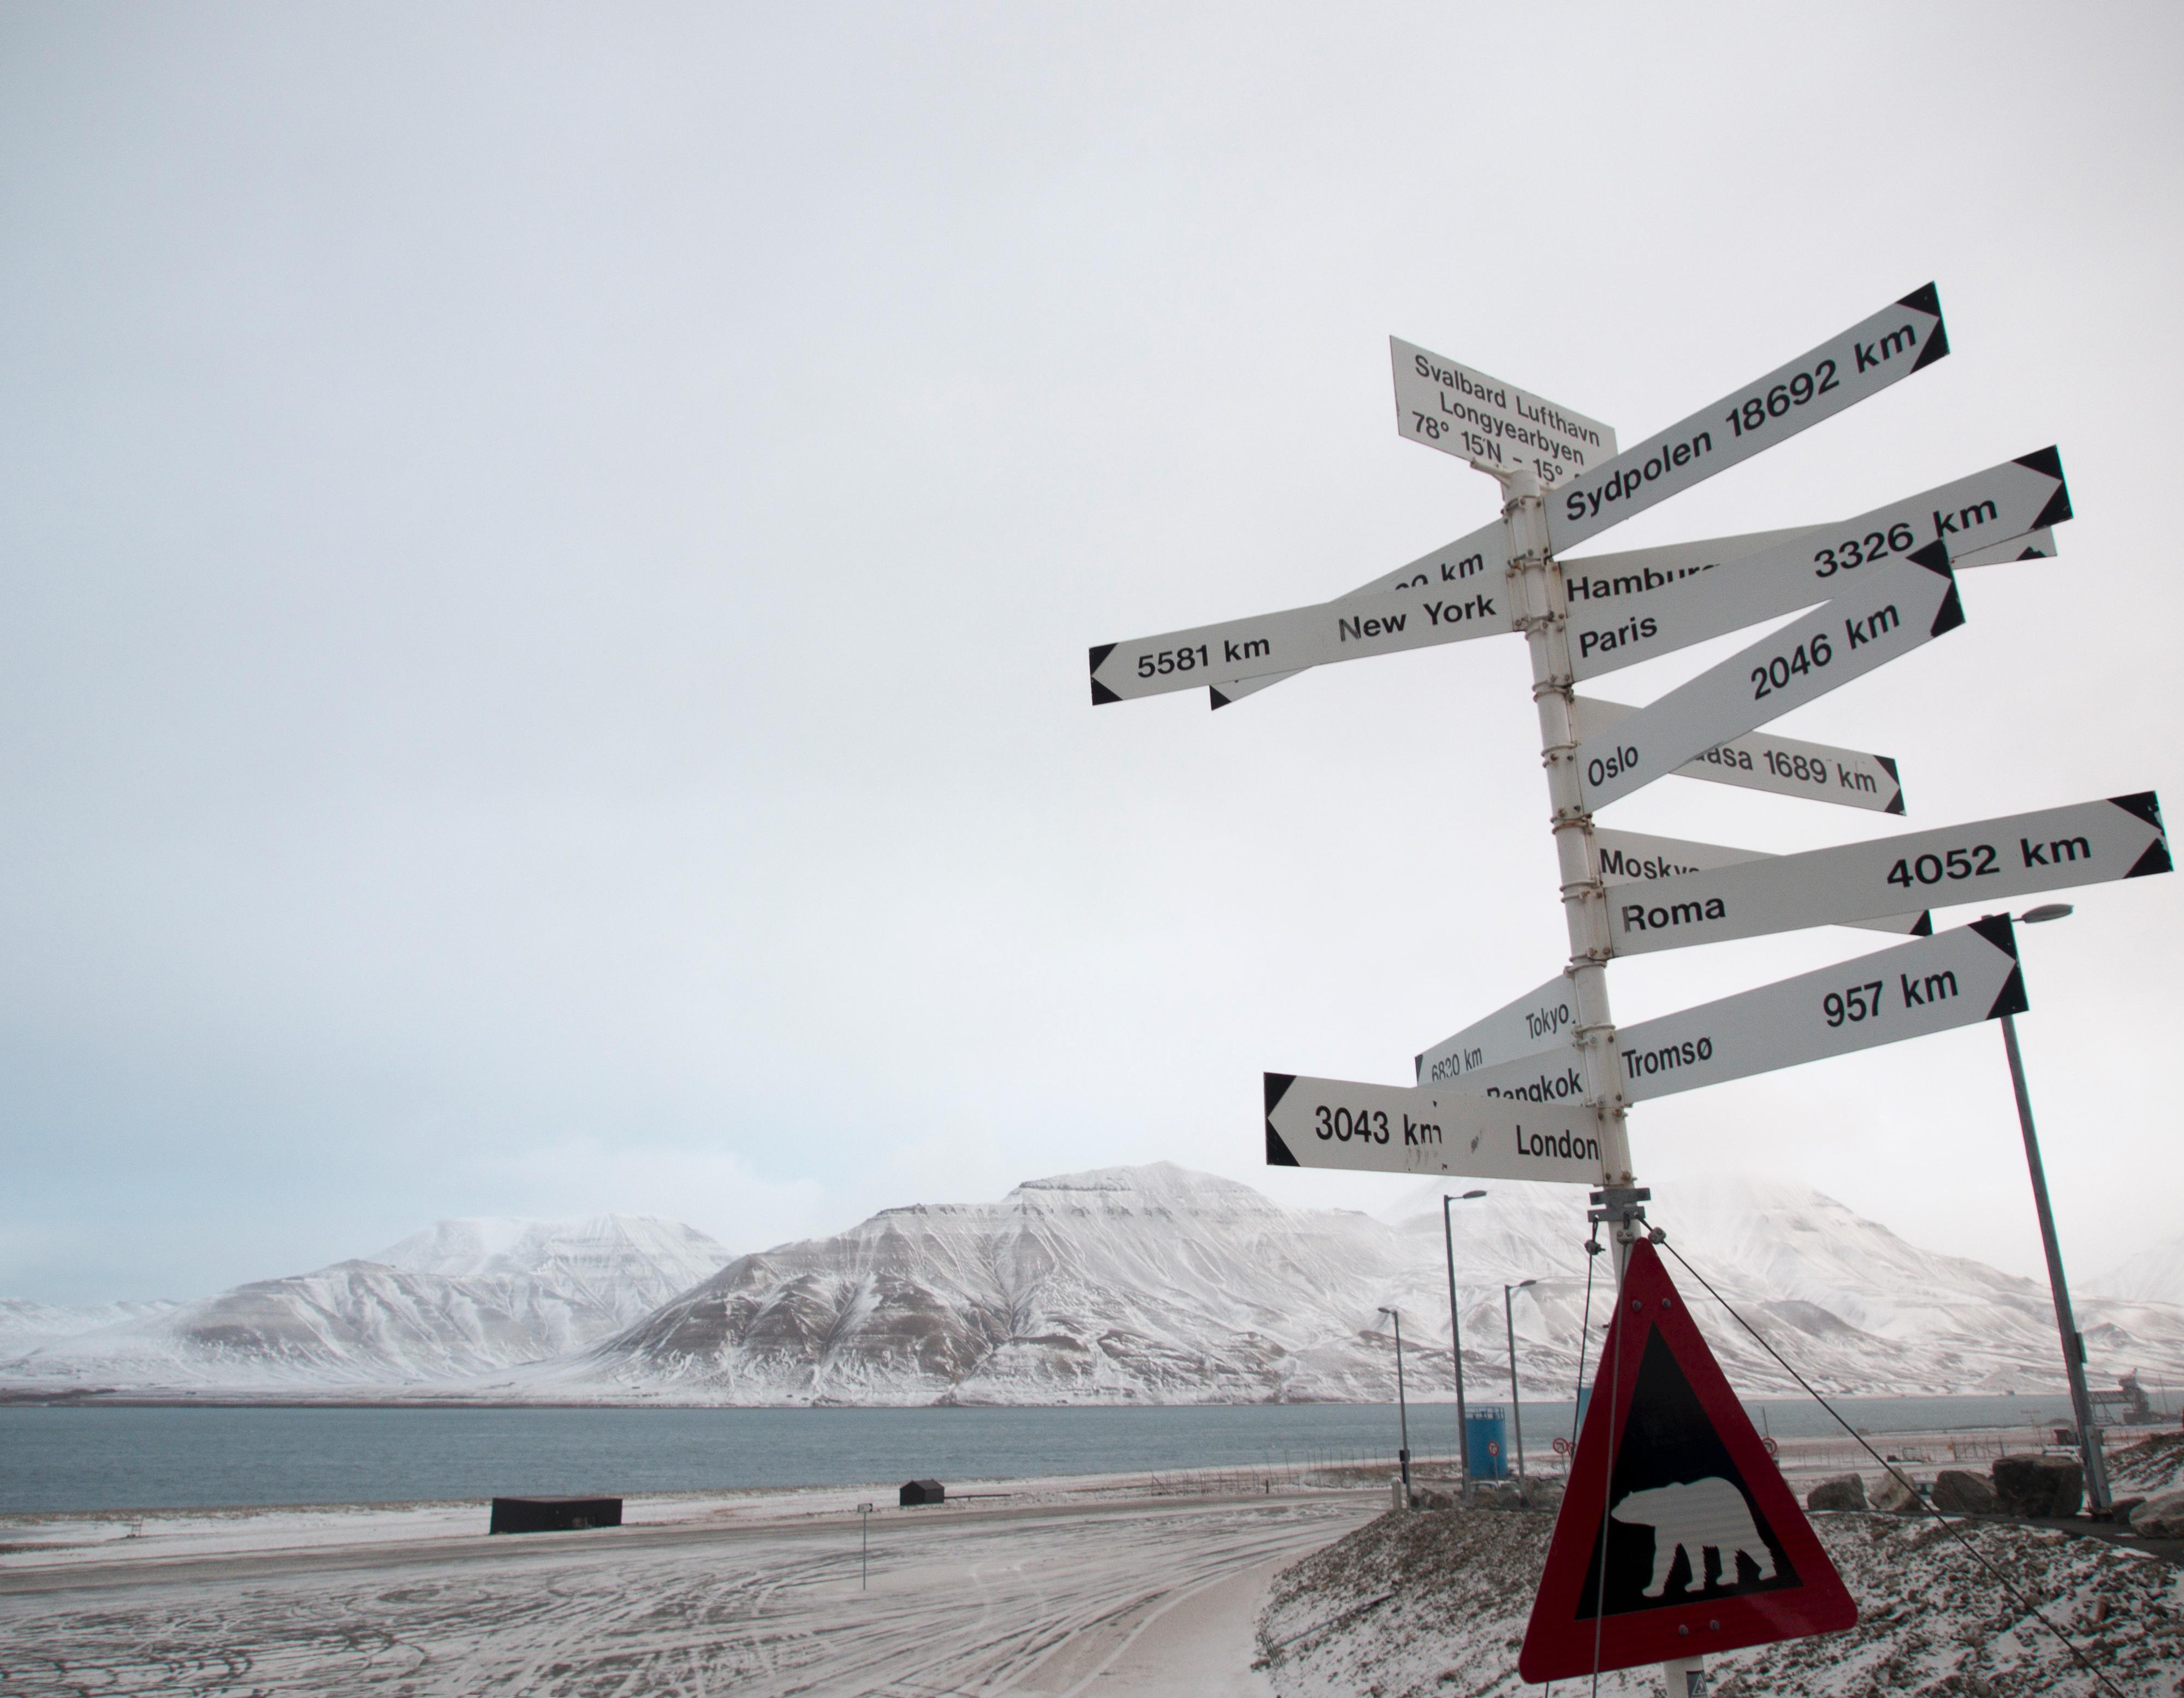 E-M1: 100 ISO, f/3.5, 1/200, 12mm. Fra Svalbard Lufthavn er det ganske langt til de aller fleste steder.Foto: Kjersti Stuestøl